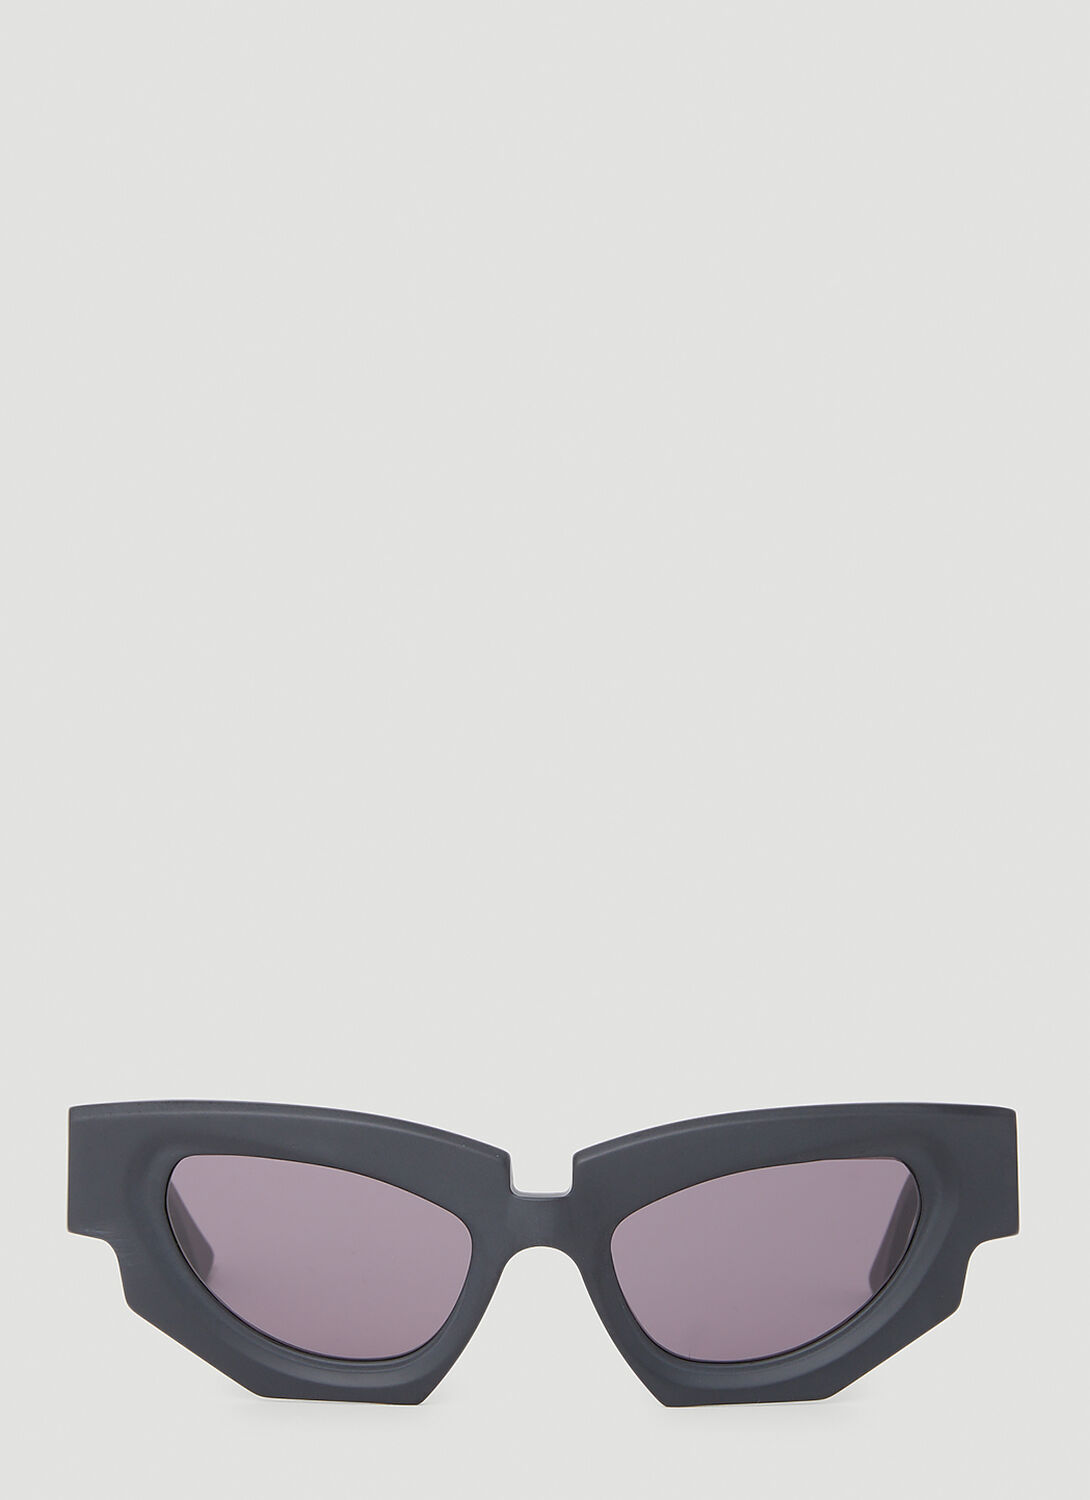 Kuboraum F5 Sunglasses